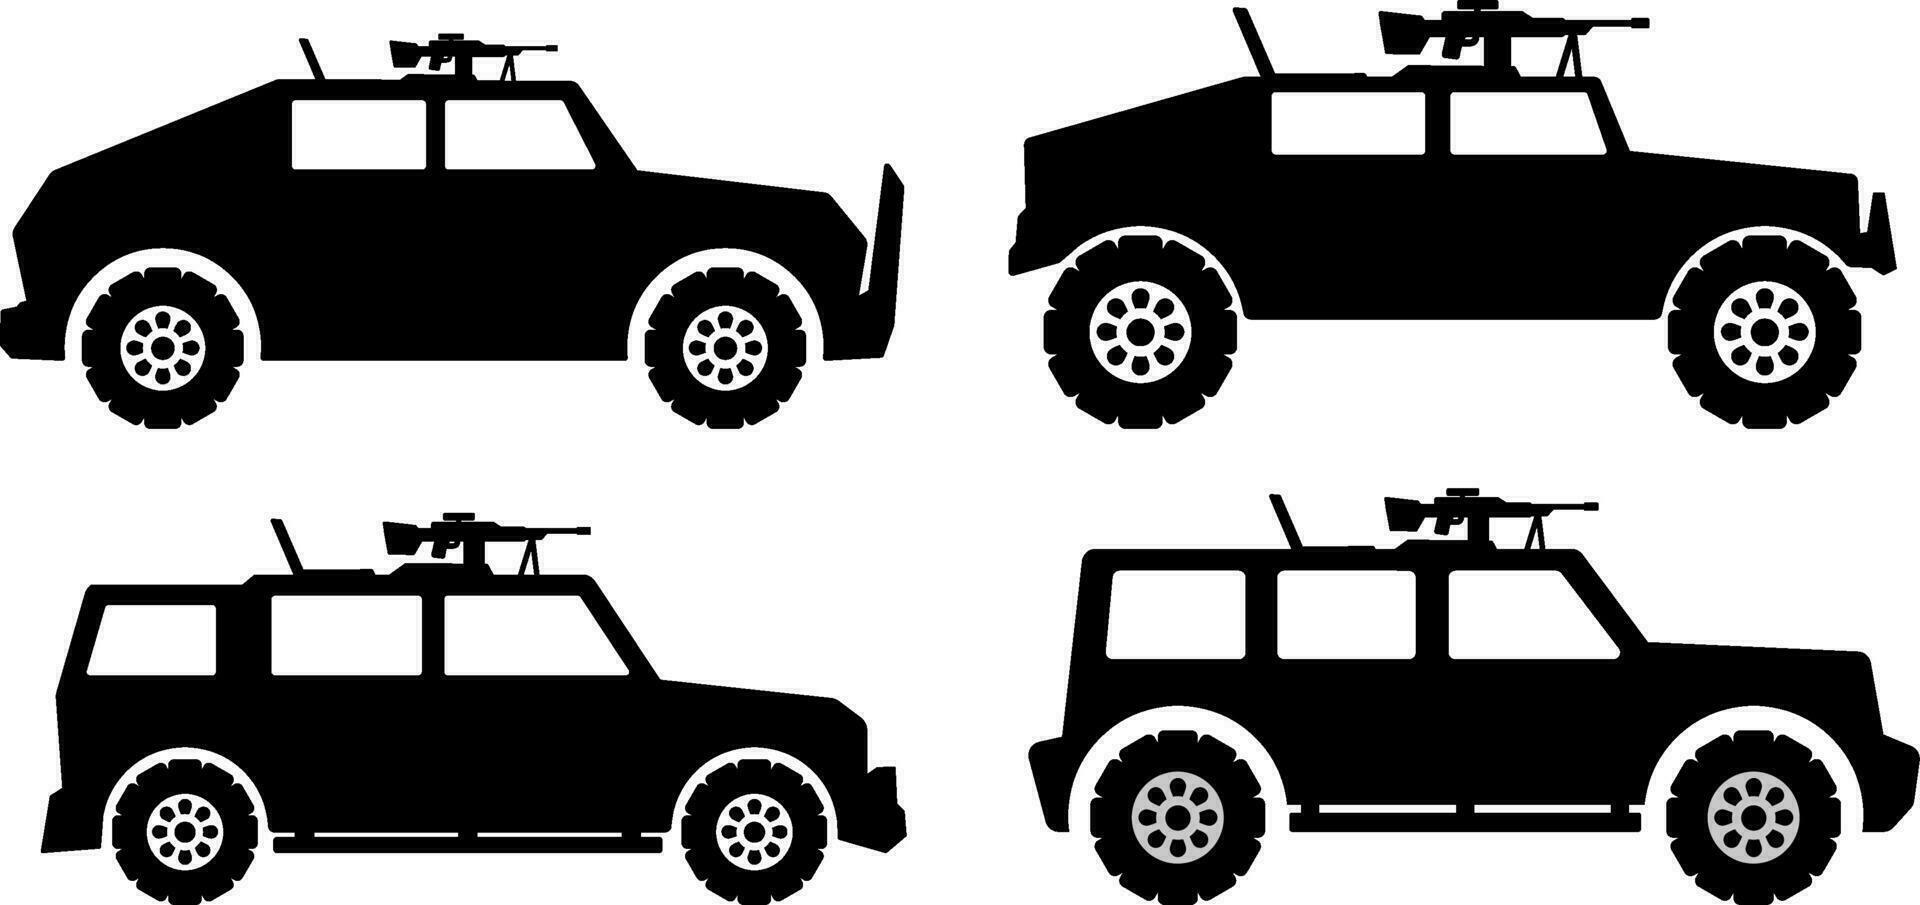 militär fordon ikon uppsättning. ljus verktyg fordon silhuett för ikon, symbol eller tecken. armerad fordon symbol för militär, krig, konflikt och försvar vektor